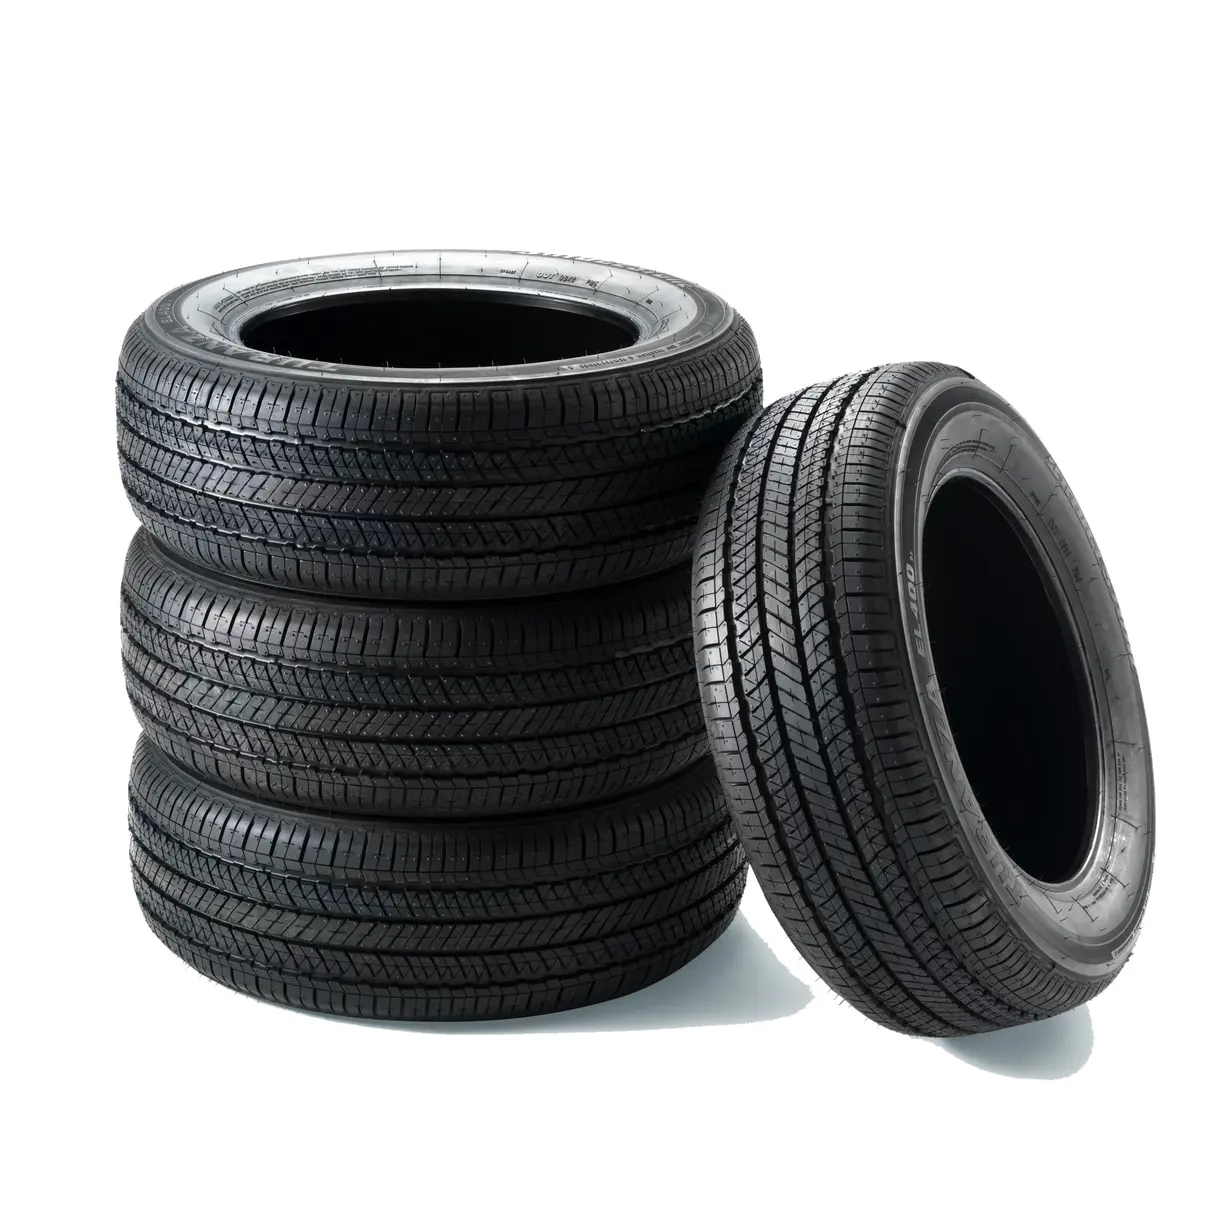 Stock di massa disponibile di pneumatici usati a buon mercato./pneumatici per auto di qualità a prezzi all'ingrosso